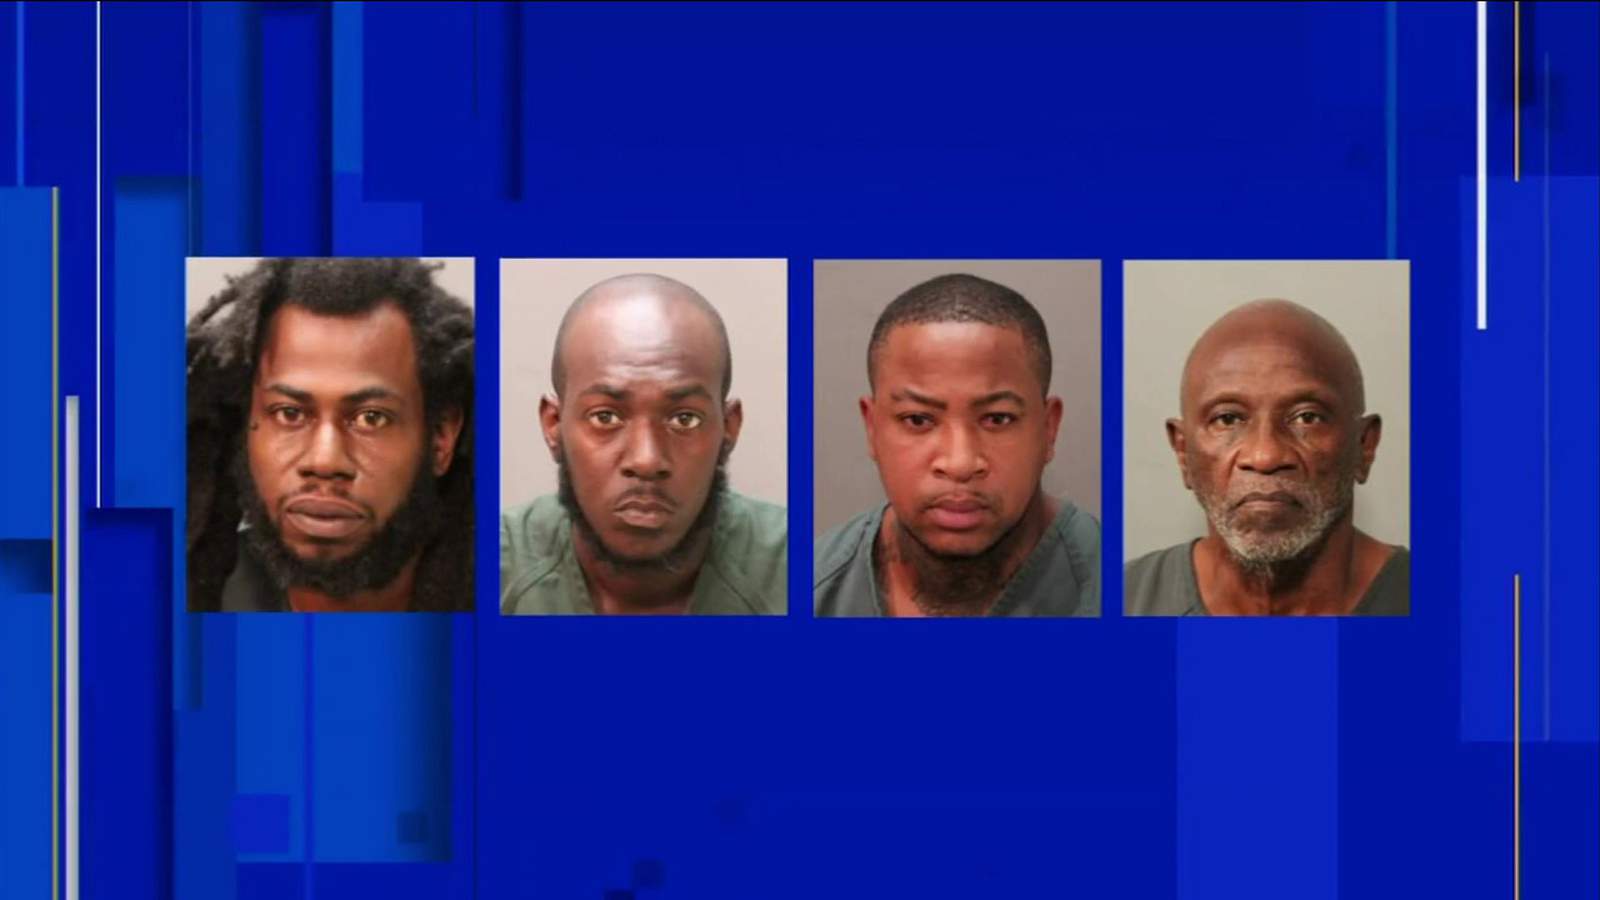 Investigation into drug trafficking operation nets 4 Jacksonville arrests